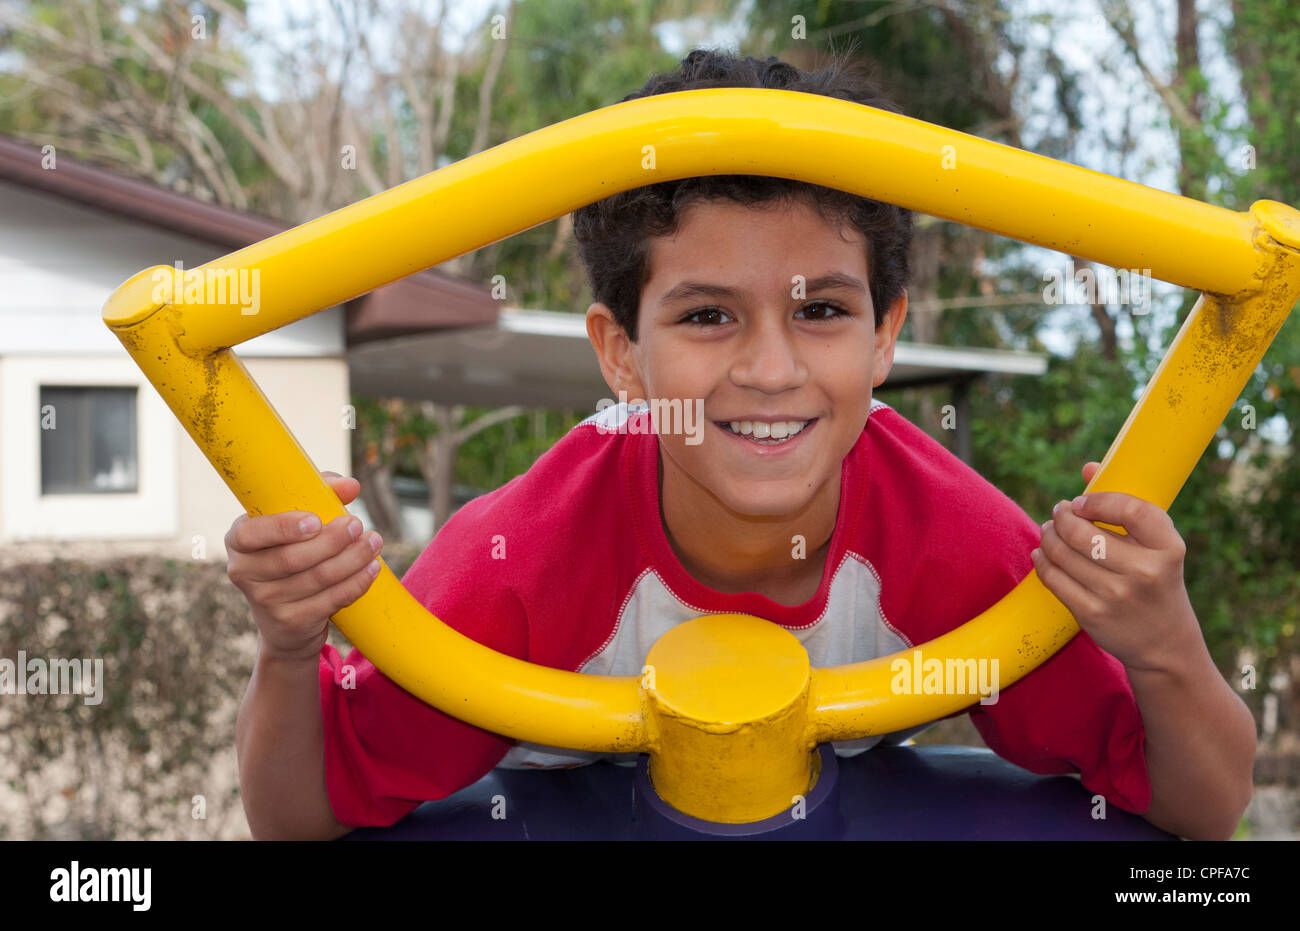 Spanische jungen im Alter von 11 spielen auf Spielplatz auf Ausrüstung Porträt im Park mit bunten Spaß Stockfoto